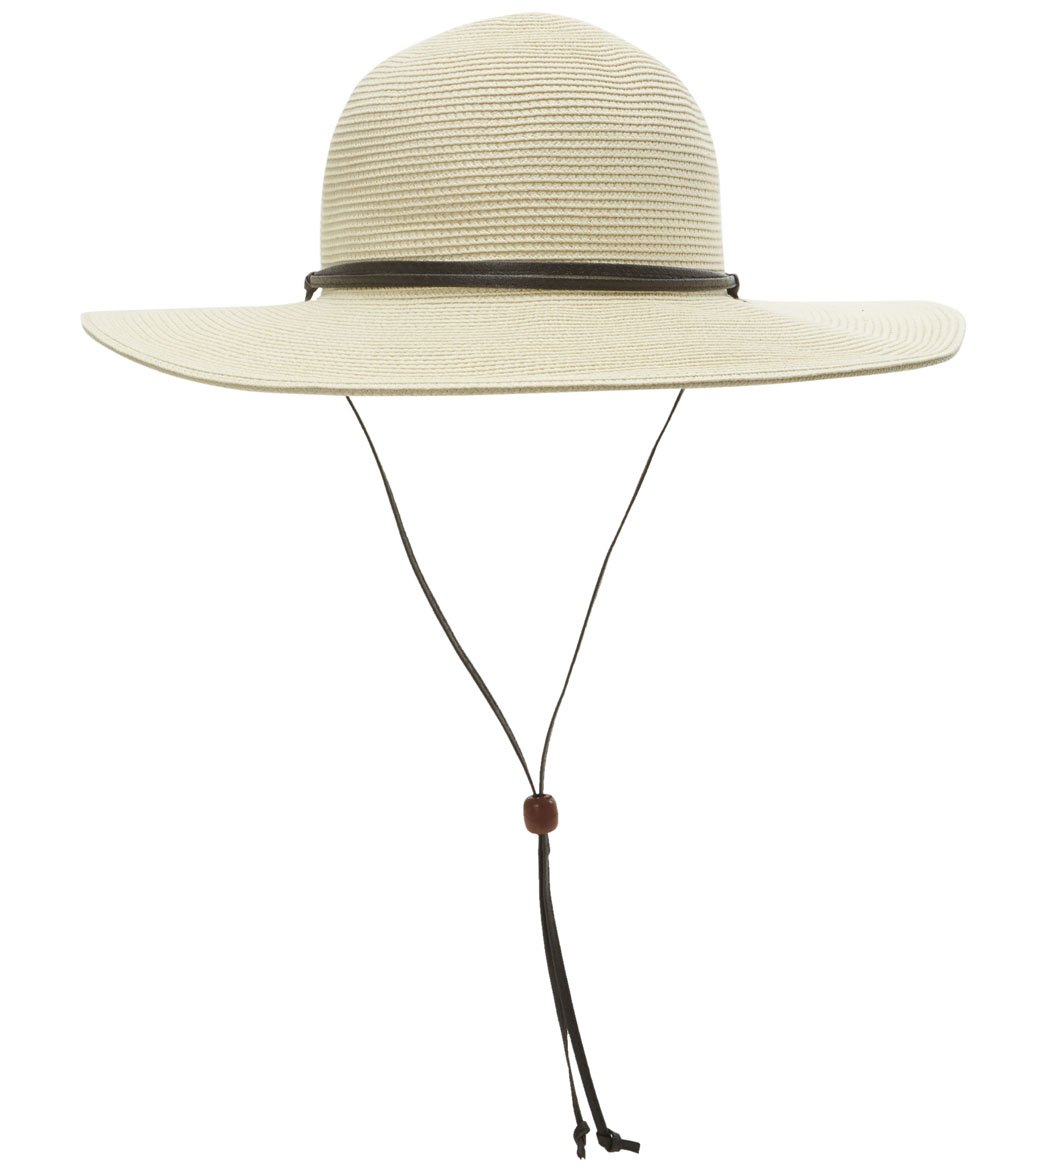 Peter Grimm Coralia Packable Sun Hat - Natural - Swimoutlet.com